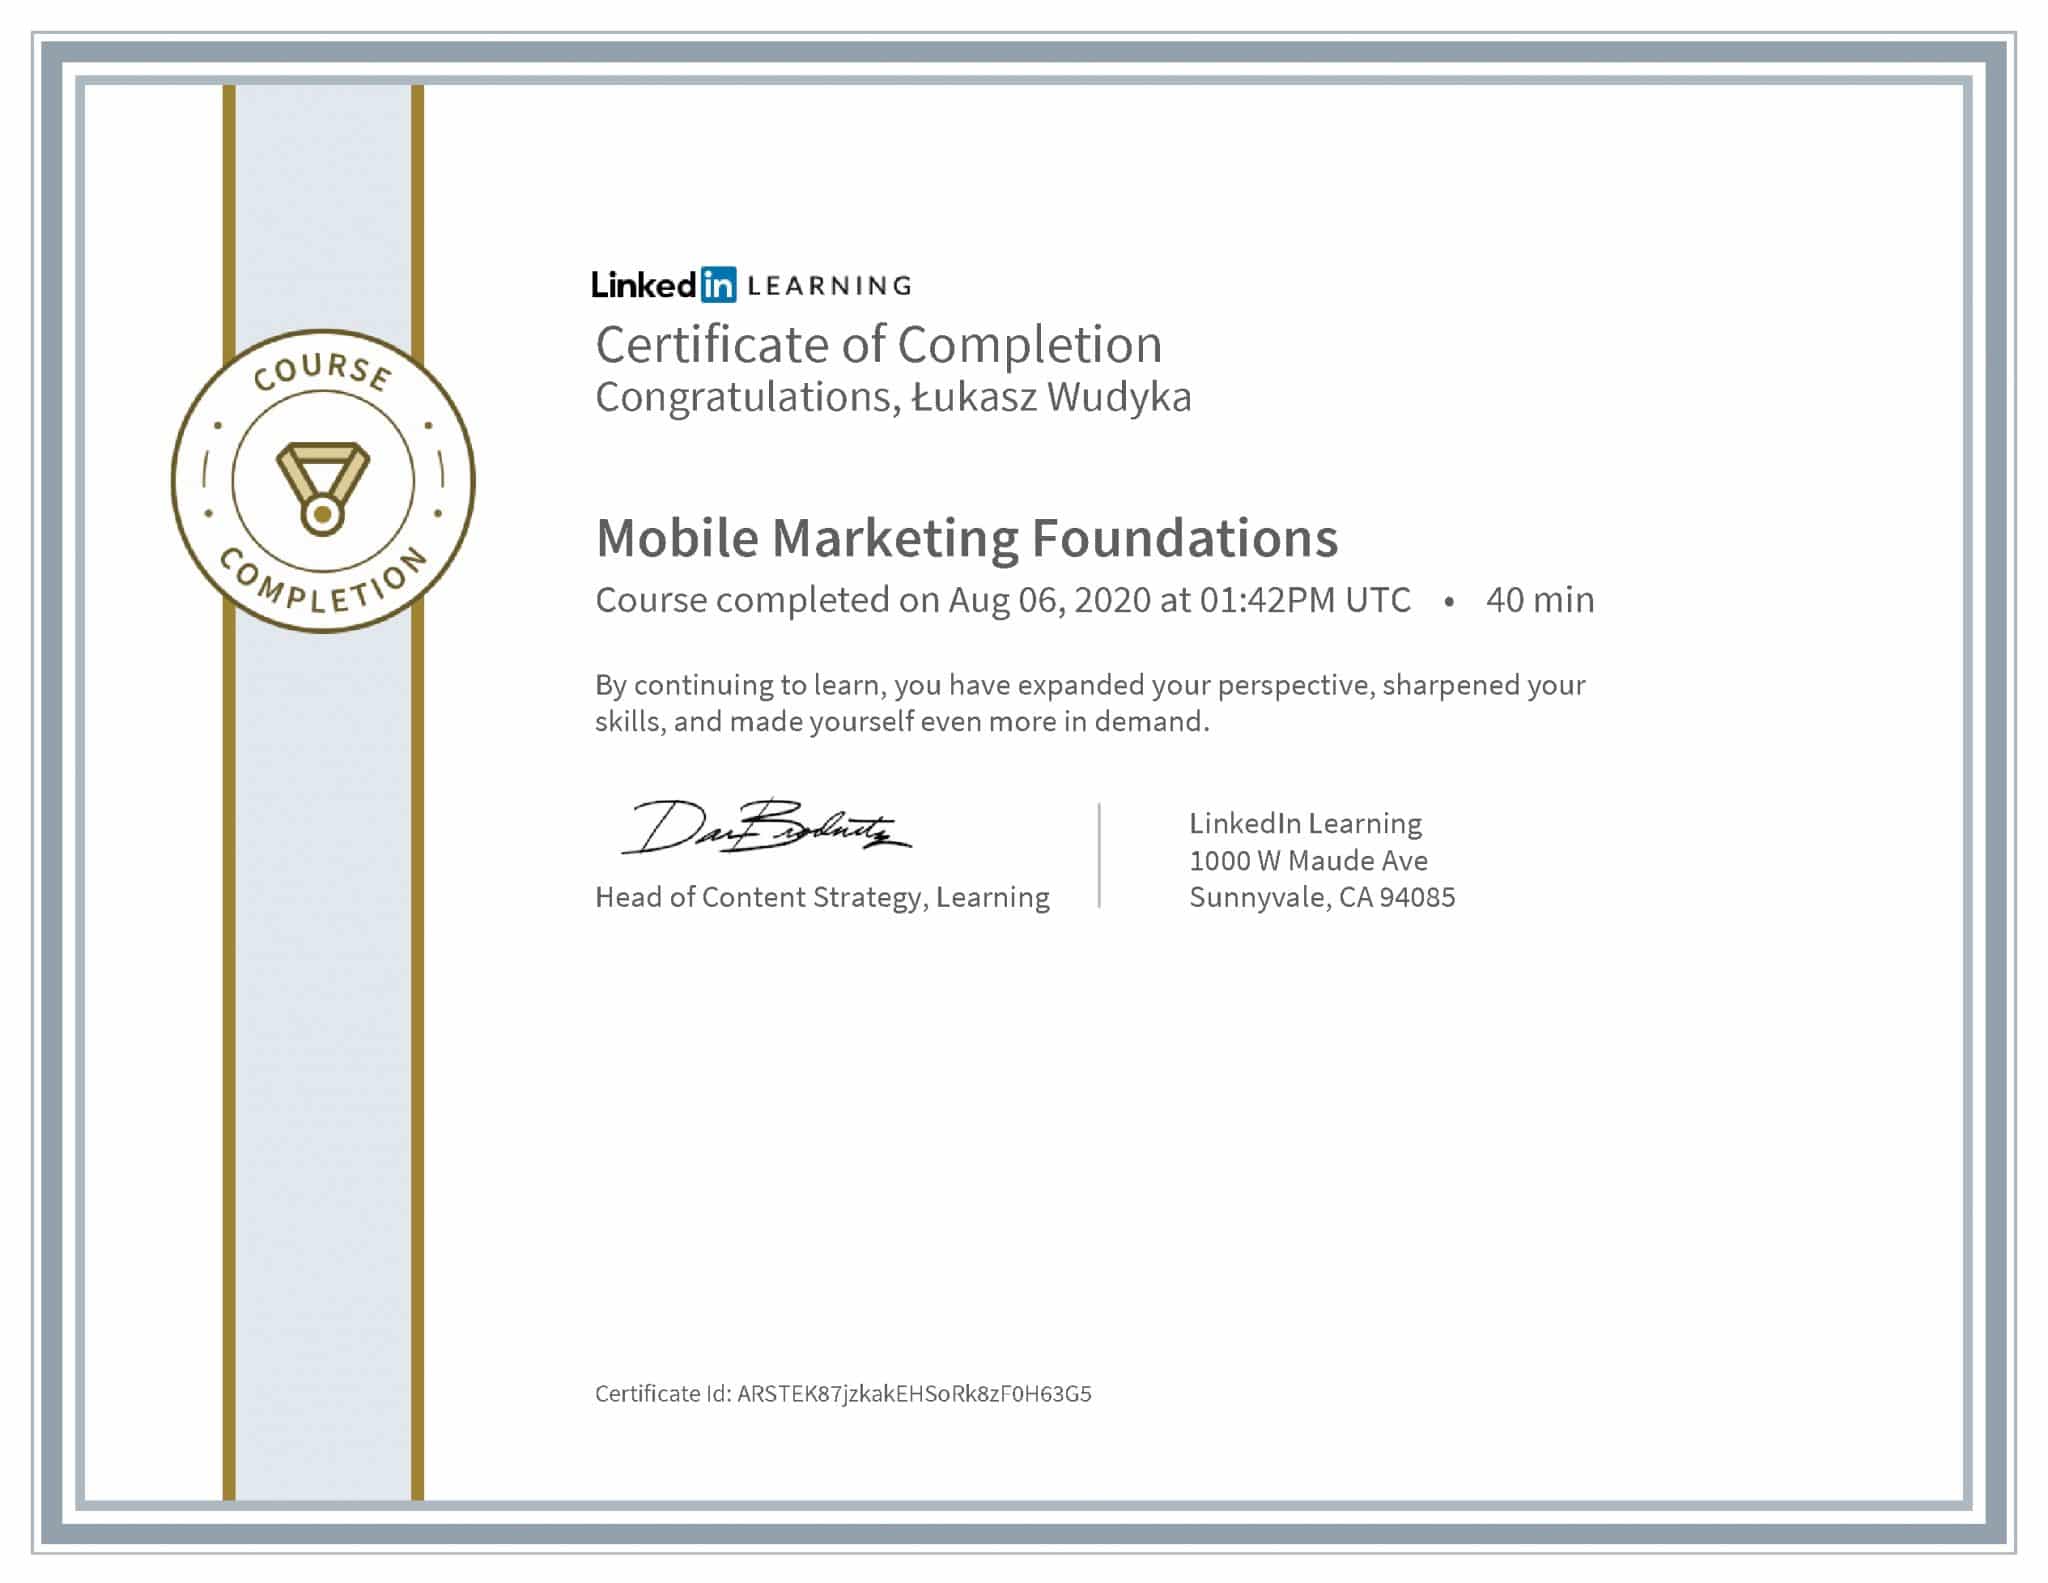 Łukasz Wudyka certyfikat LinkedIn Mobile Marketing Foundations